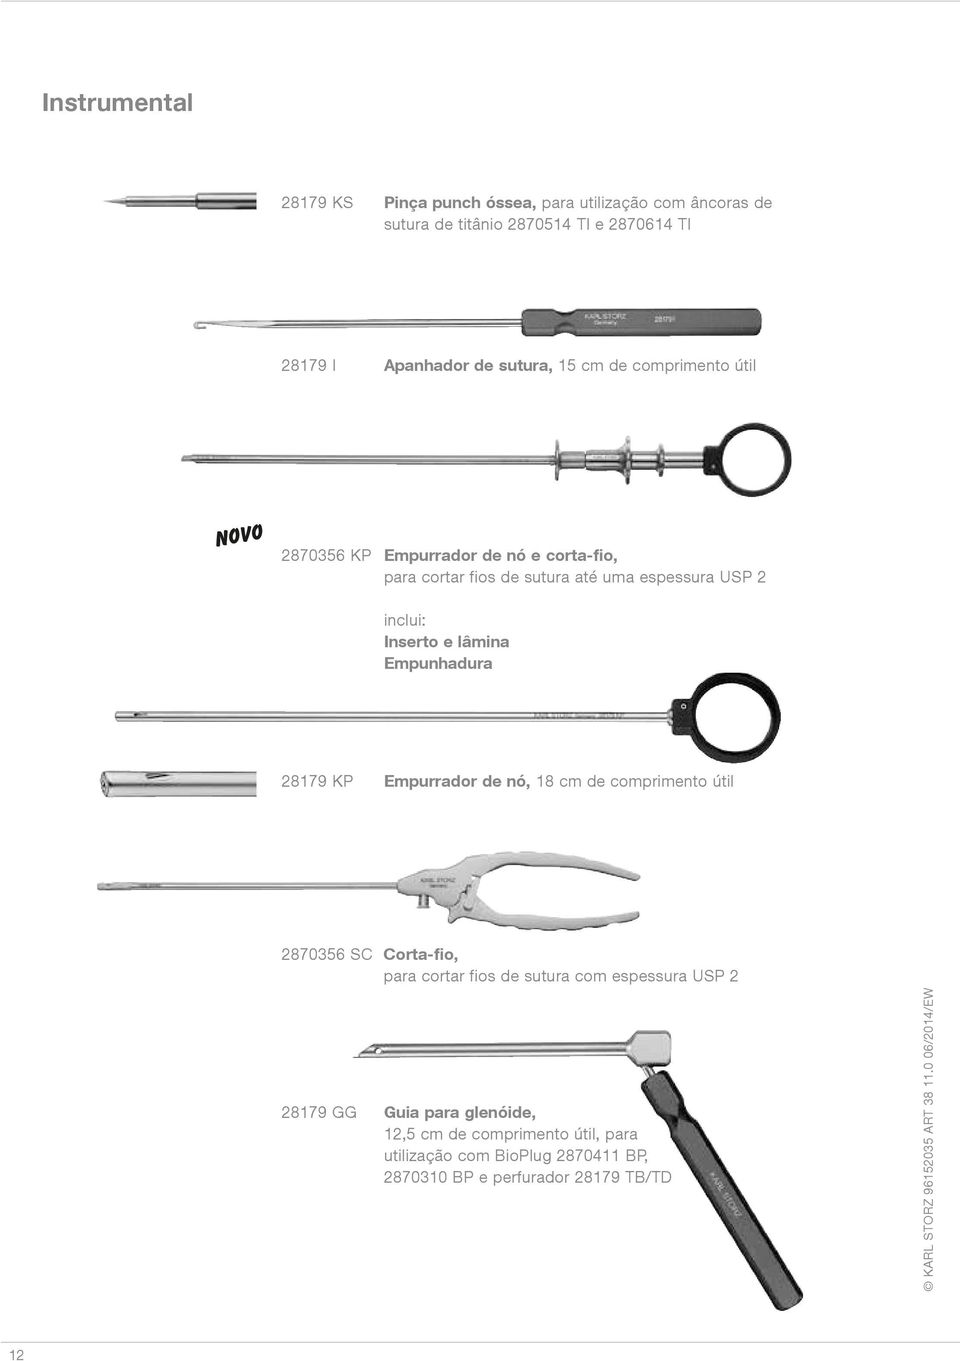 Inserto e lâmina Empunhadura 28179 KP Empurrador de nó, 18 cm de comprimento útil 2870356 SC Corta-fio, para cortar fios de sutura com